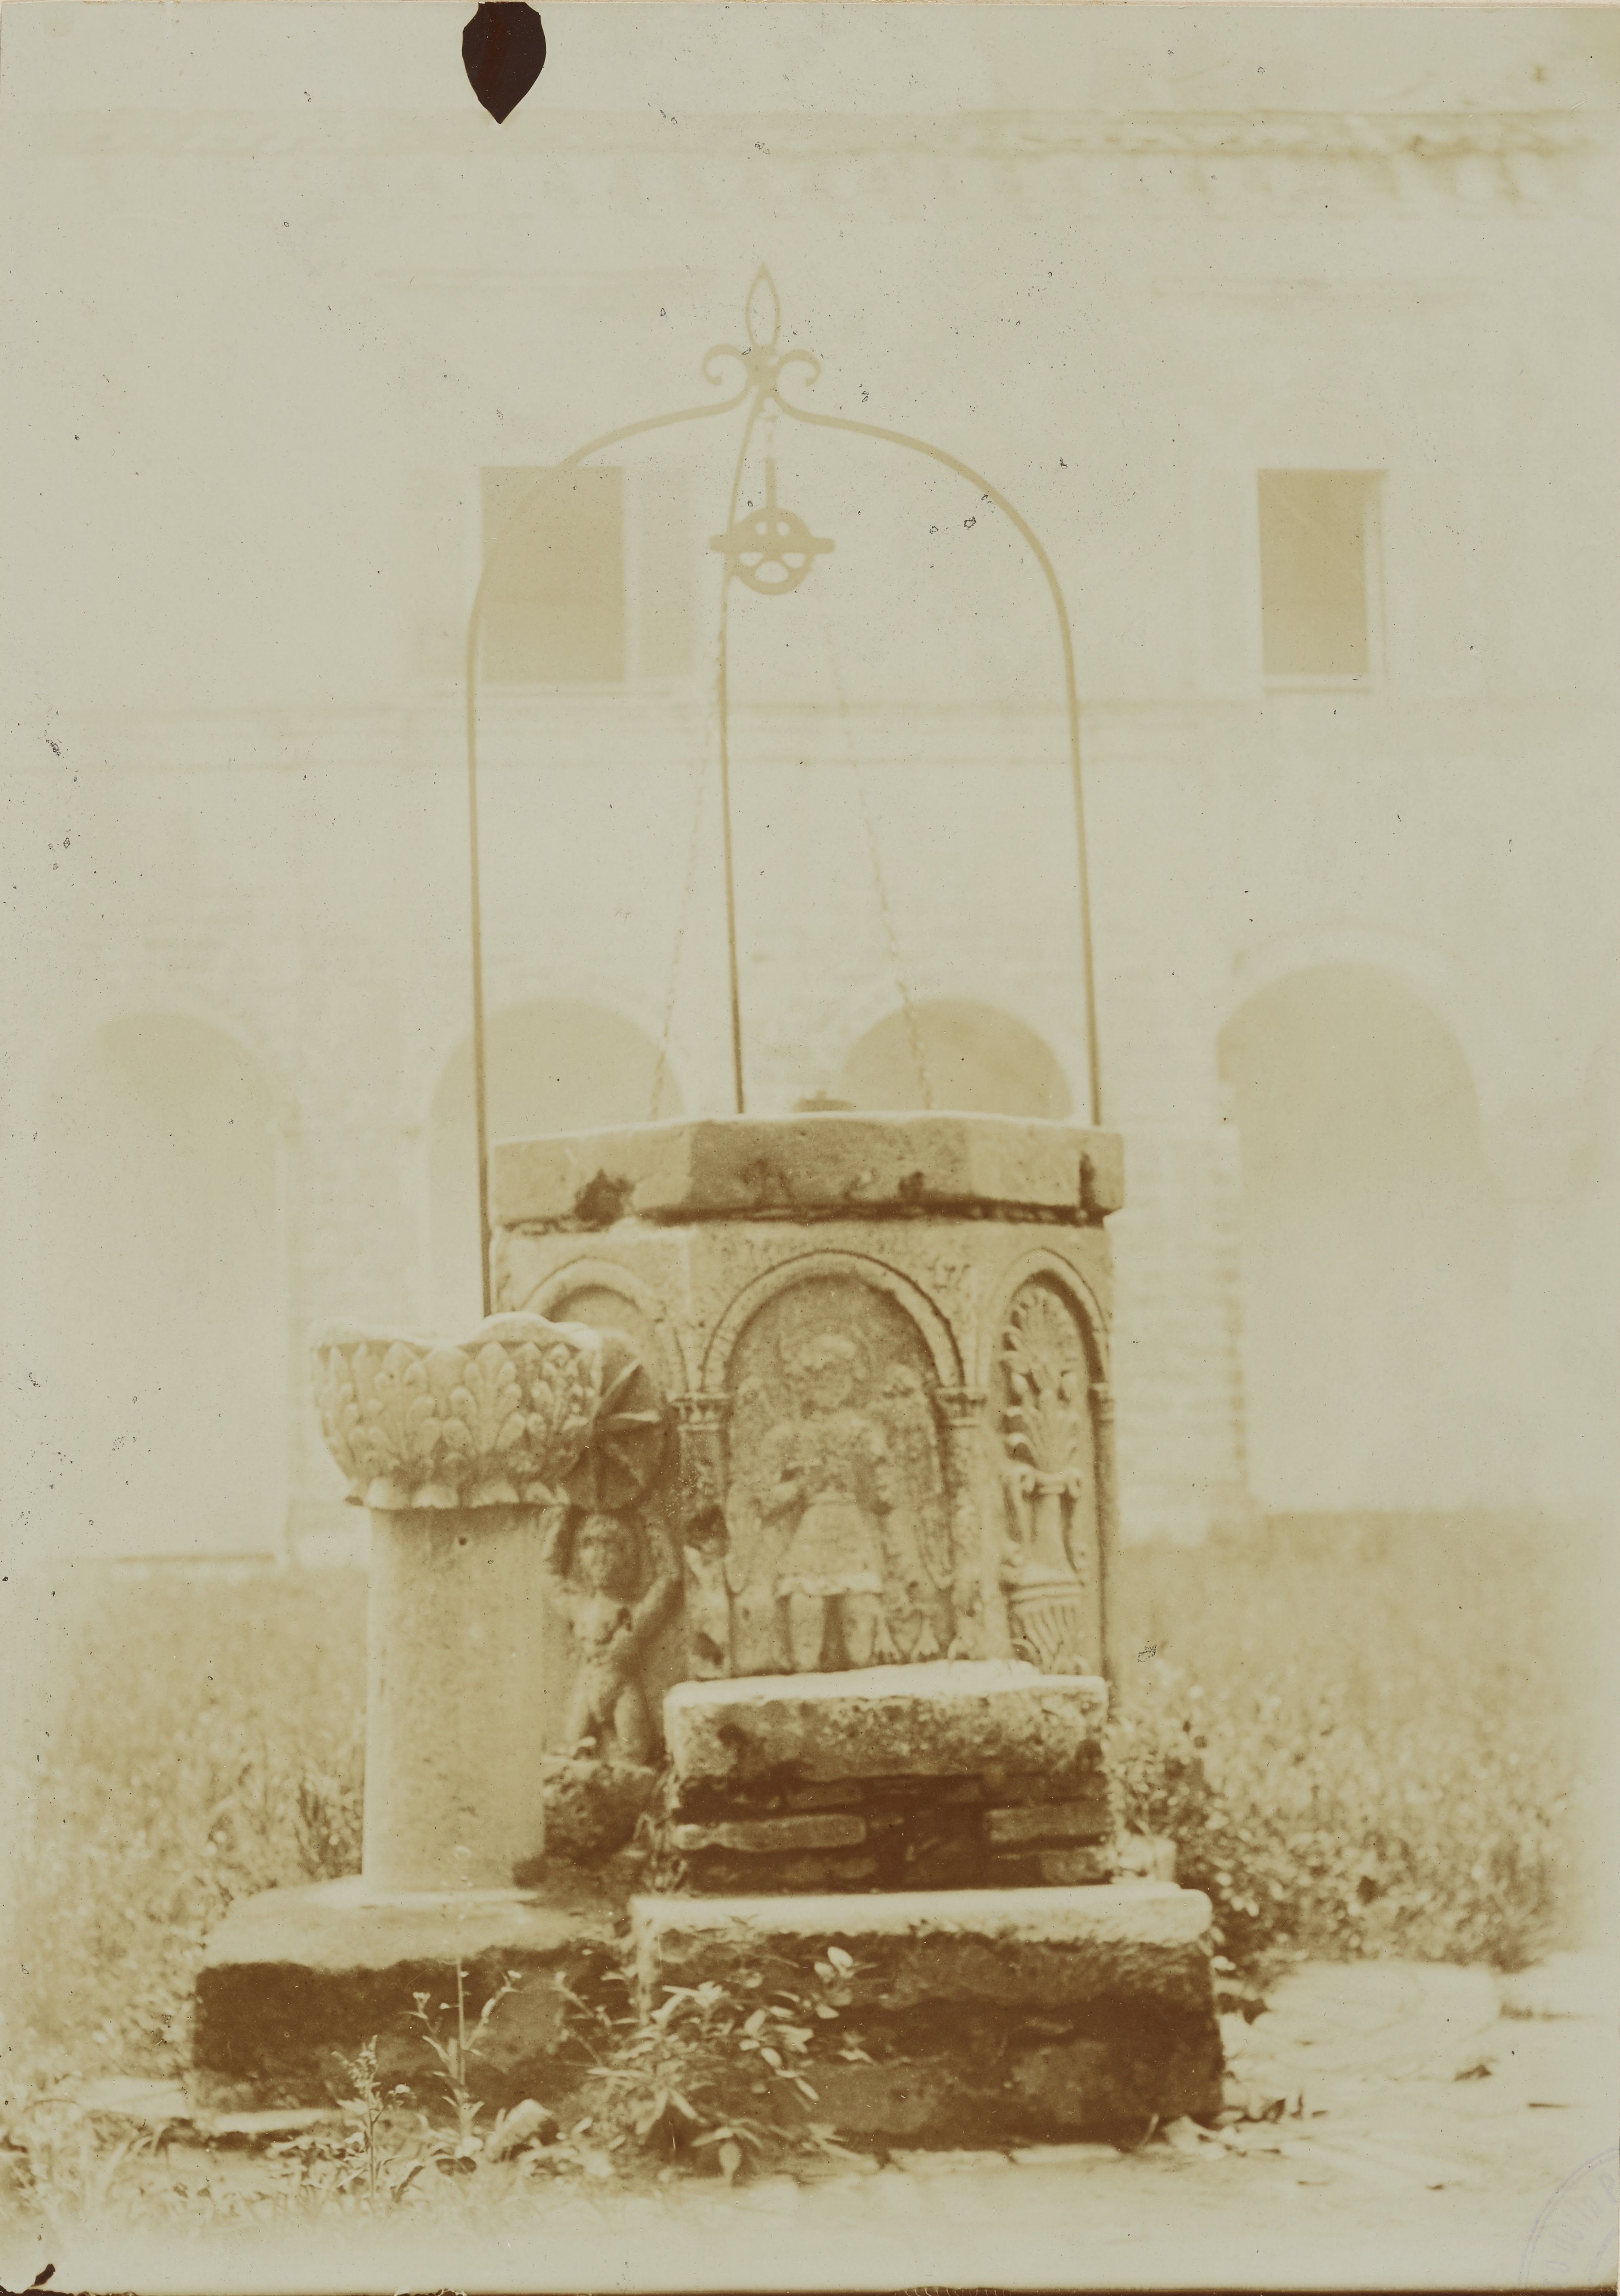 Fotografo non identificato, Montescaglioso - Abbazia benedettina di S. Michele Arcangelo, secondo cortile, pozzo, 1891-1910, aristotipo, MPI6079603